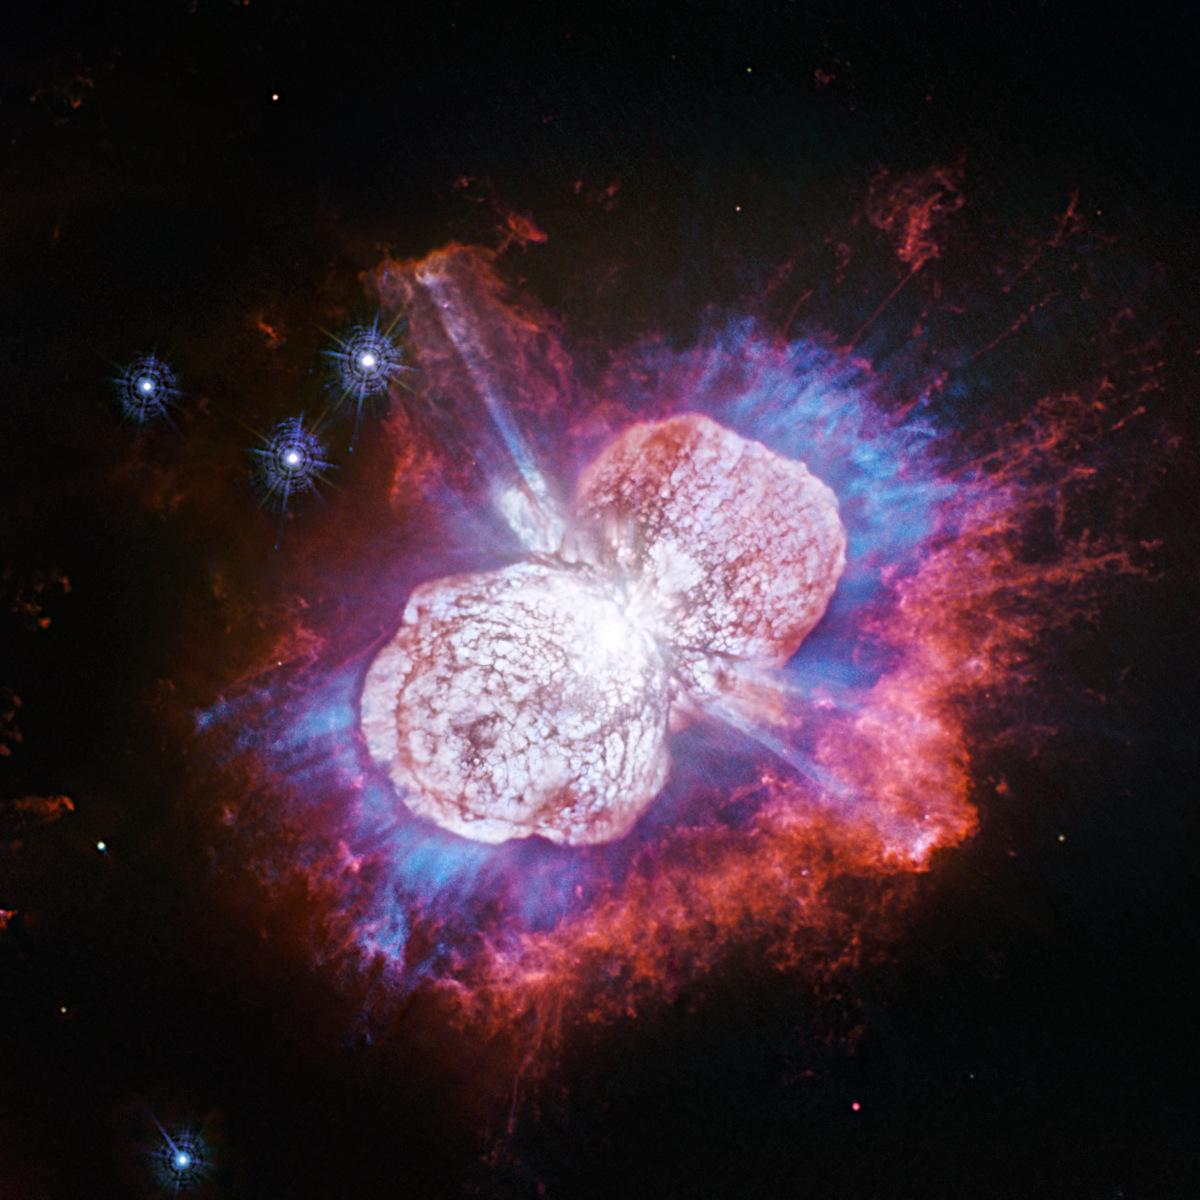 りゅうこつ座イータ星で、これまで知られていなかったガスの存在が明らかに